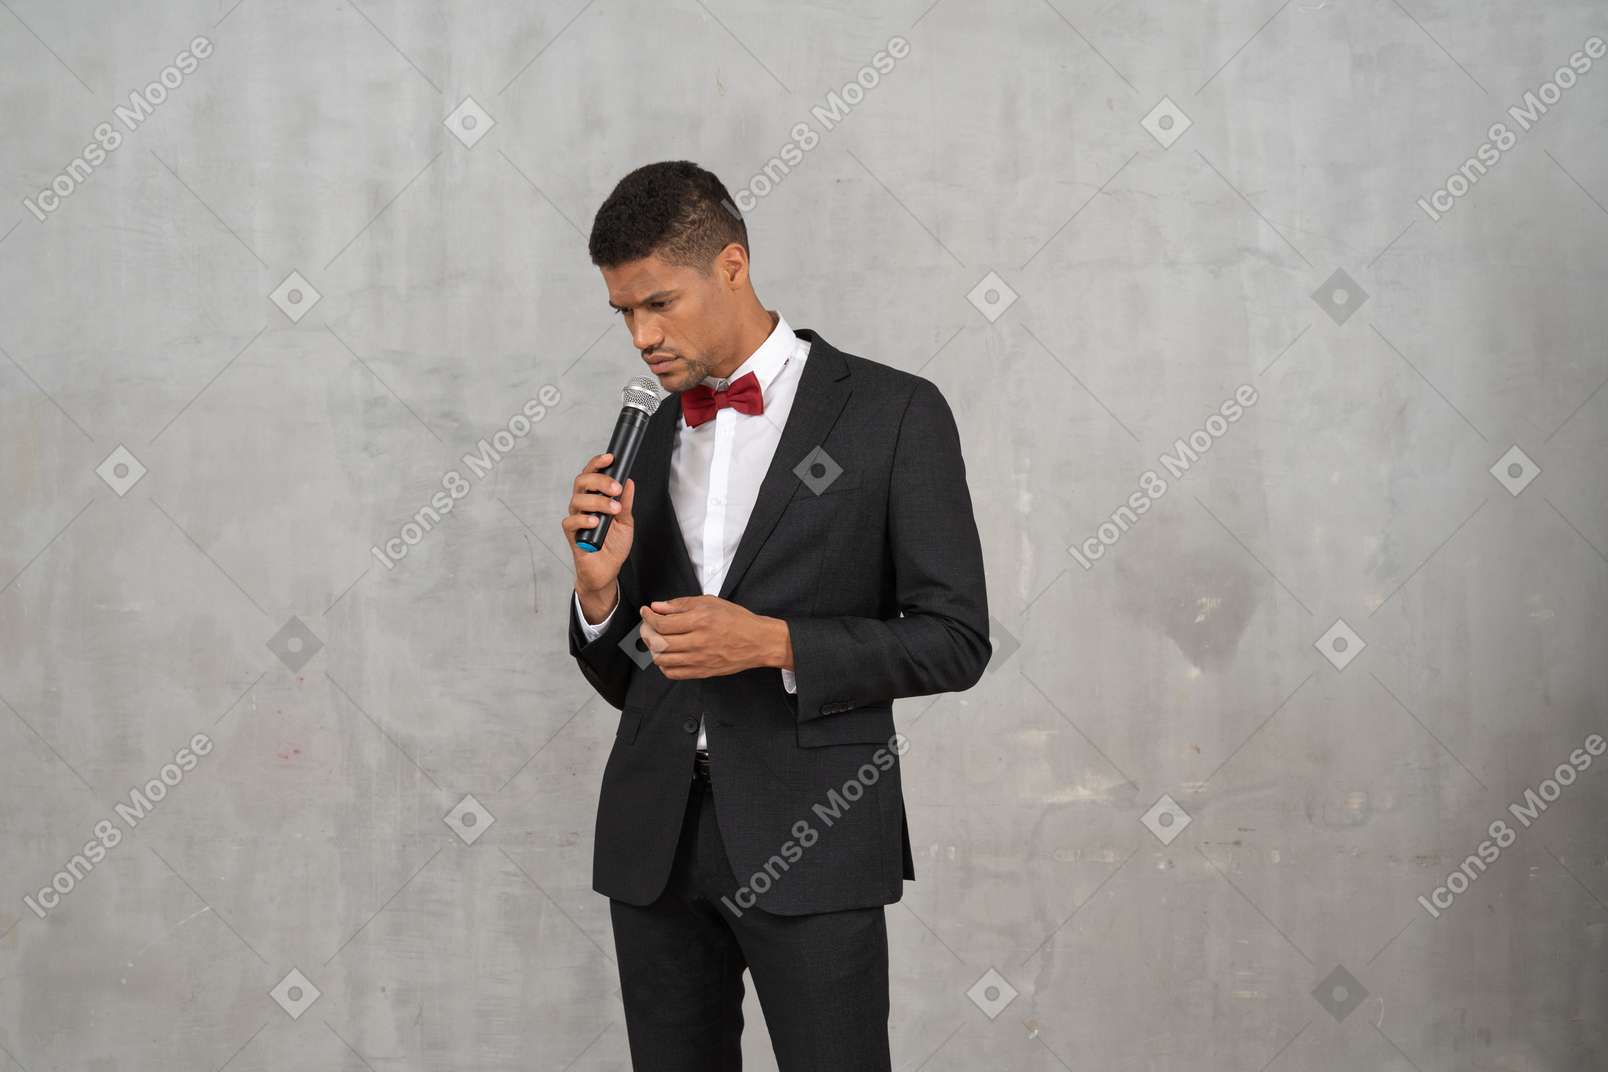 Düsterer mann im schwarzen anzug, der ein mikrofon hält